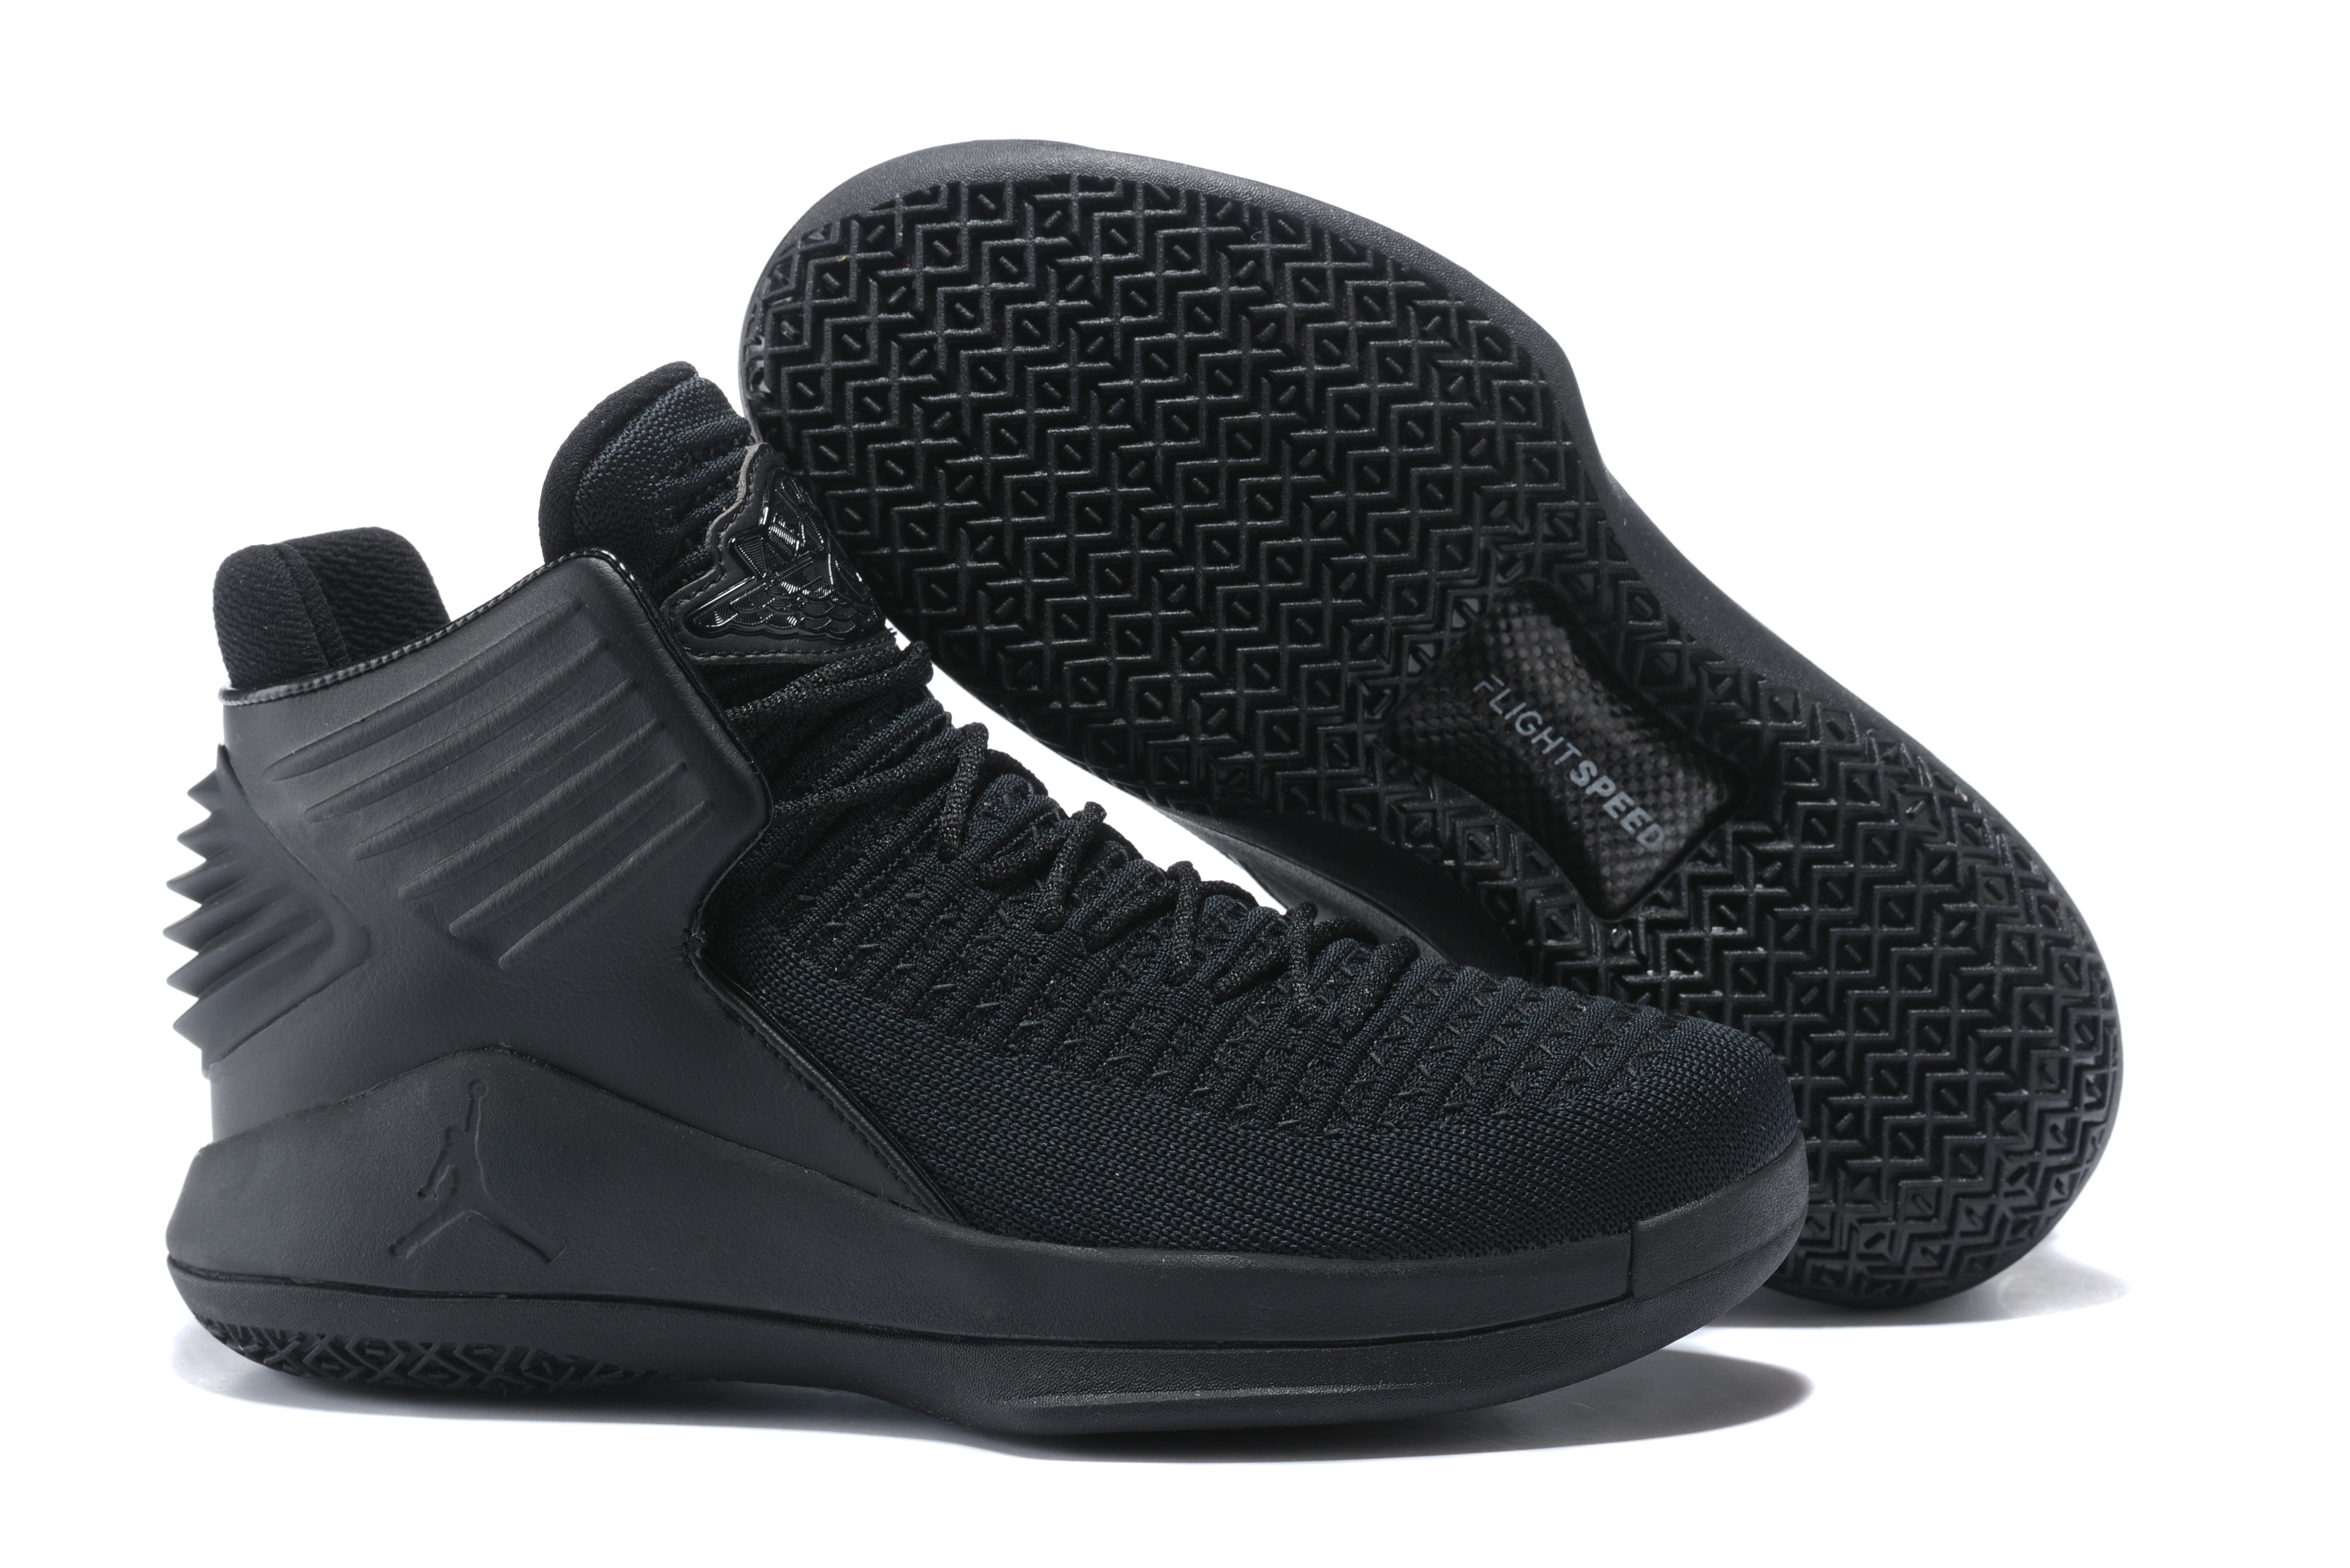 Cheap Adidas Yeezy Boost 350 V2 Zyon Fz1267 Mens 105 Kanye Ye Sneaker Shoe Urban New